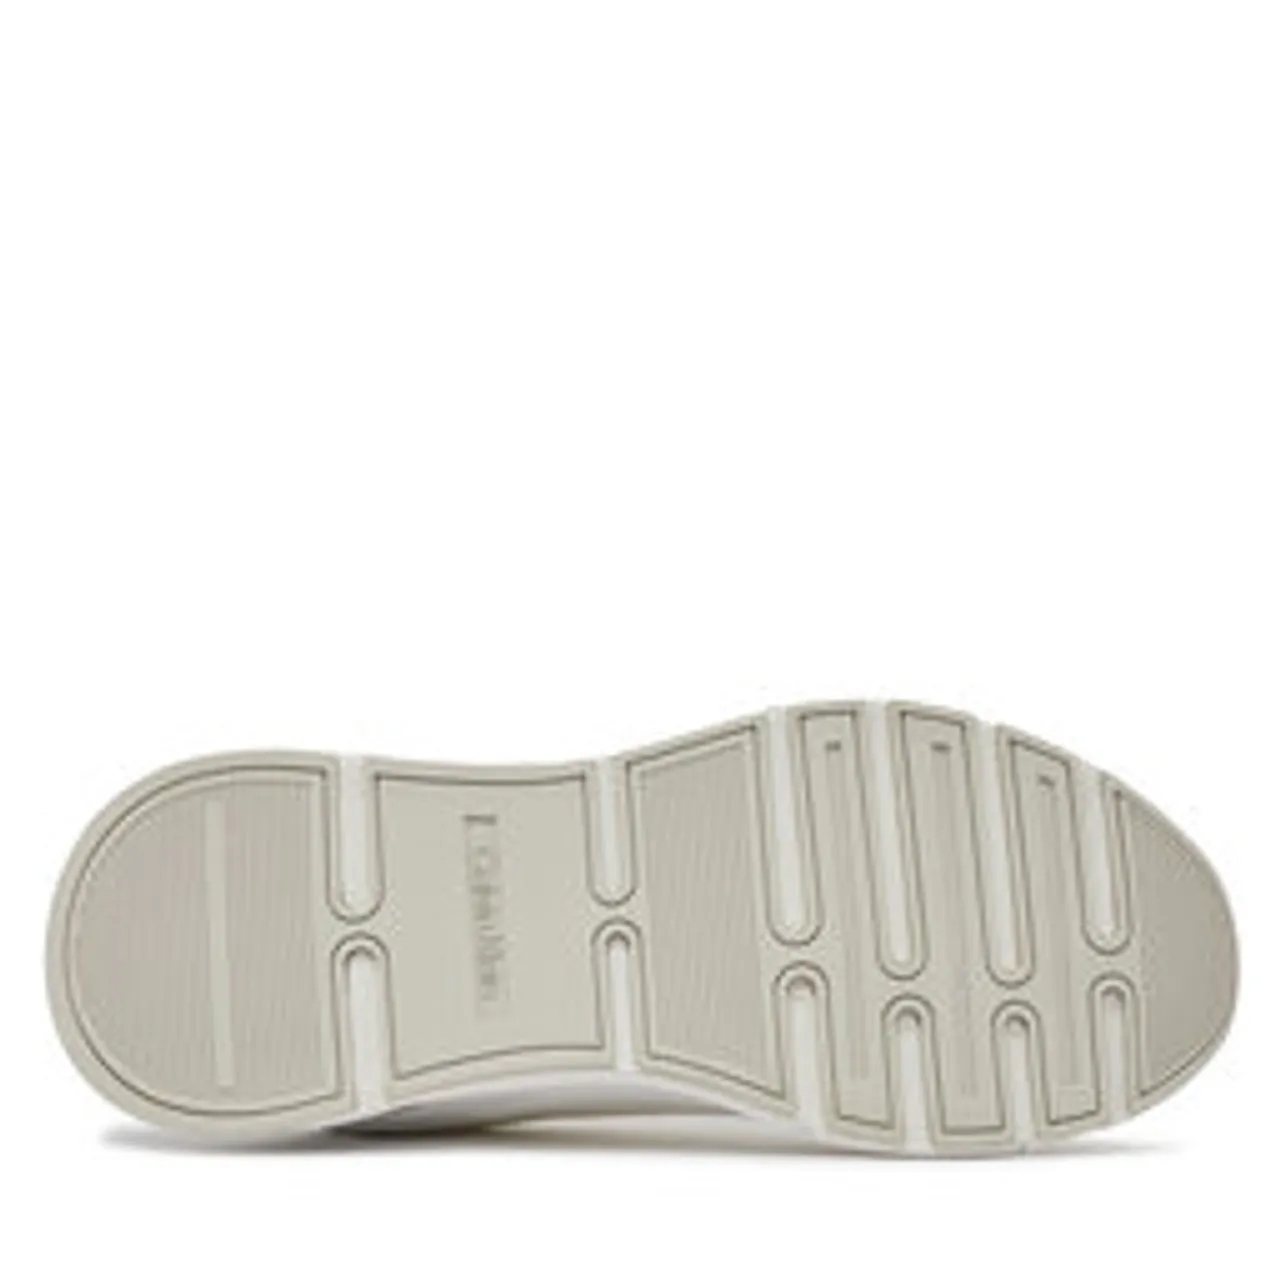 Sneakers Calvin Klein Low Top Lace Up Tech HM0HM01283 Triple White 0K4